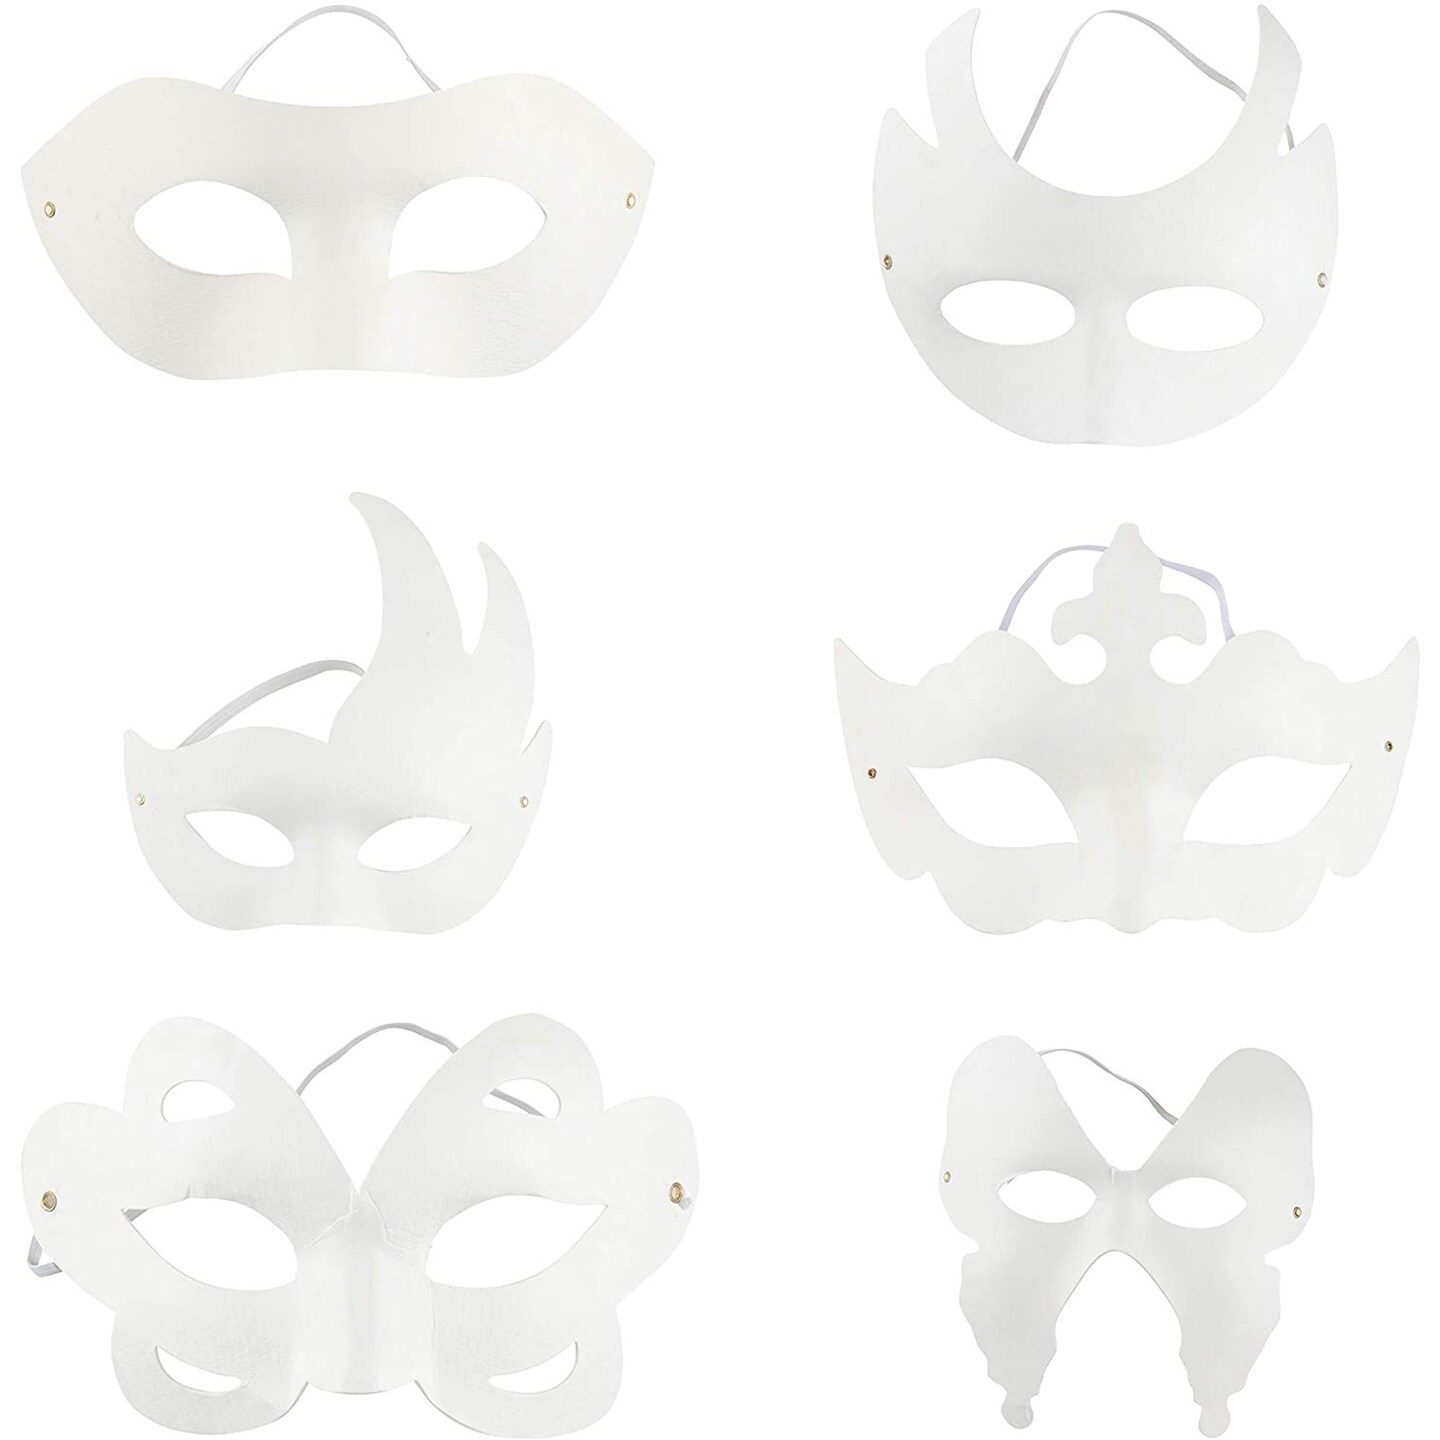 Kids' Masks and Character Masks